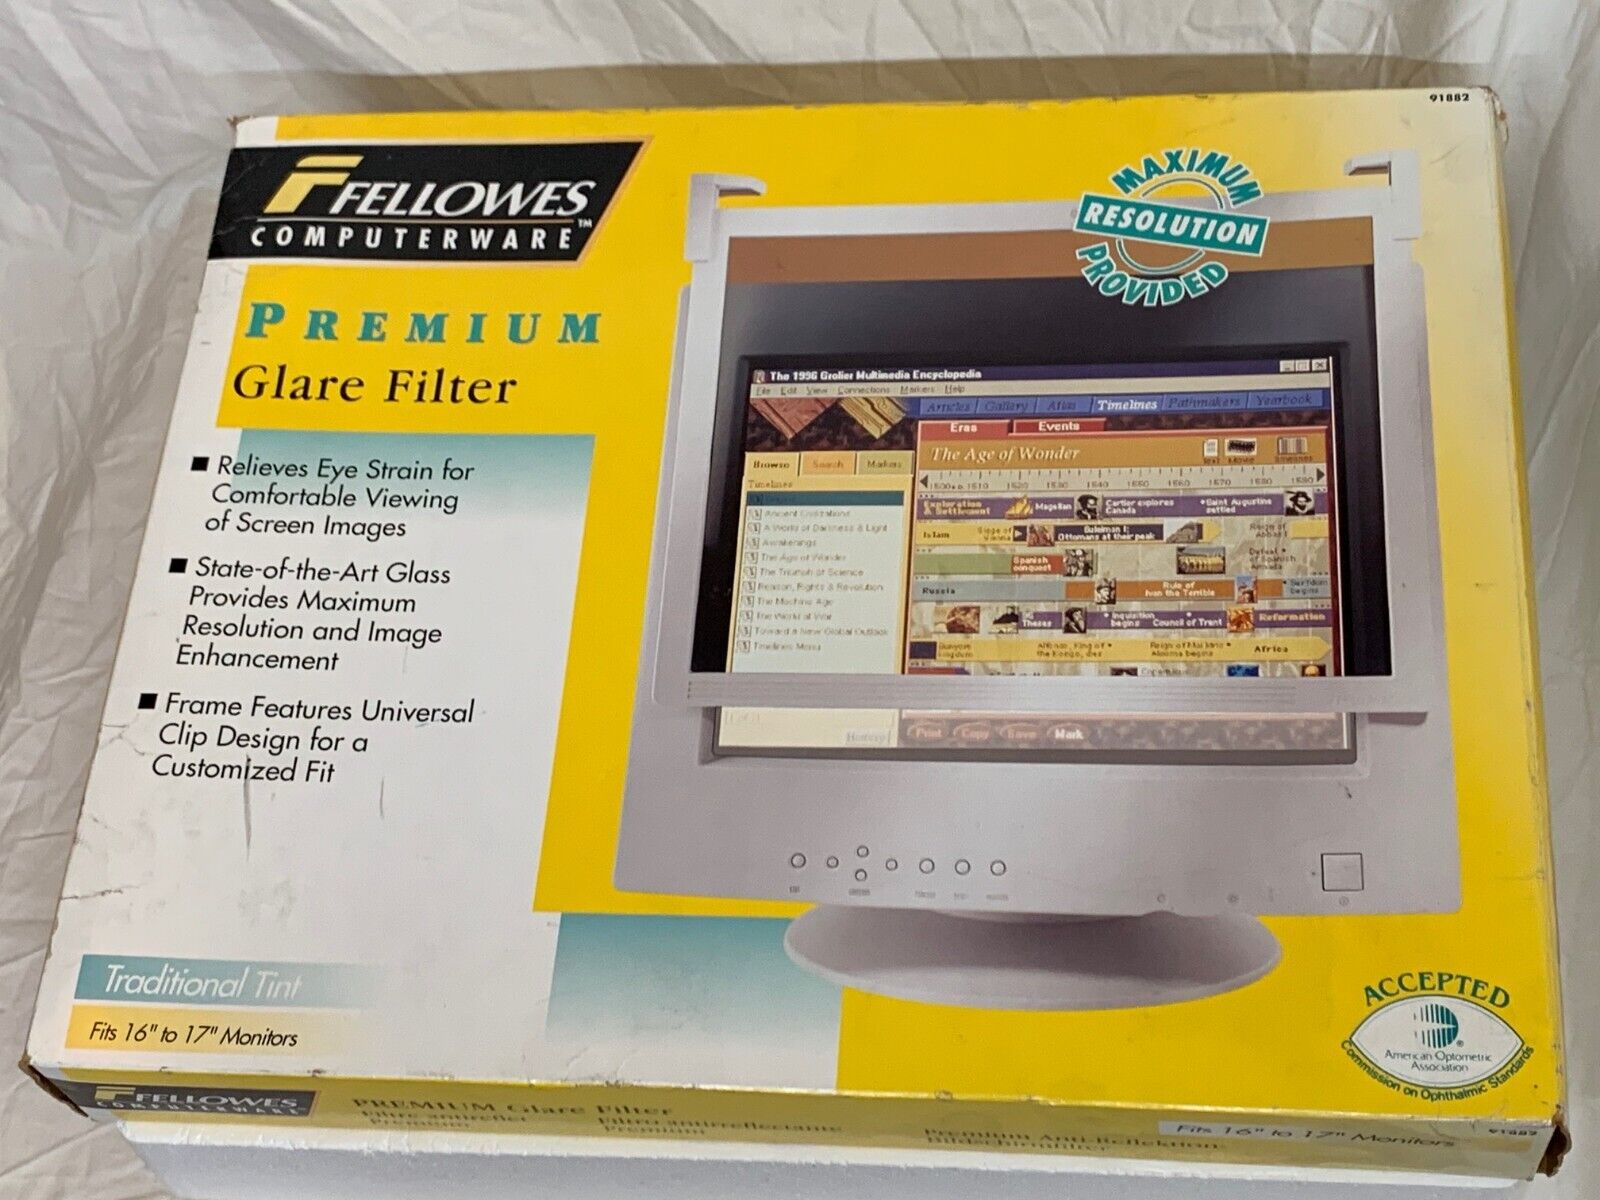 Fellowes Computerware Premium Glare Filter 16